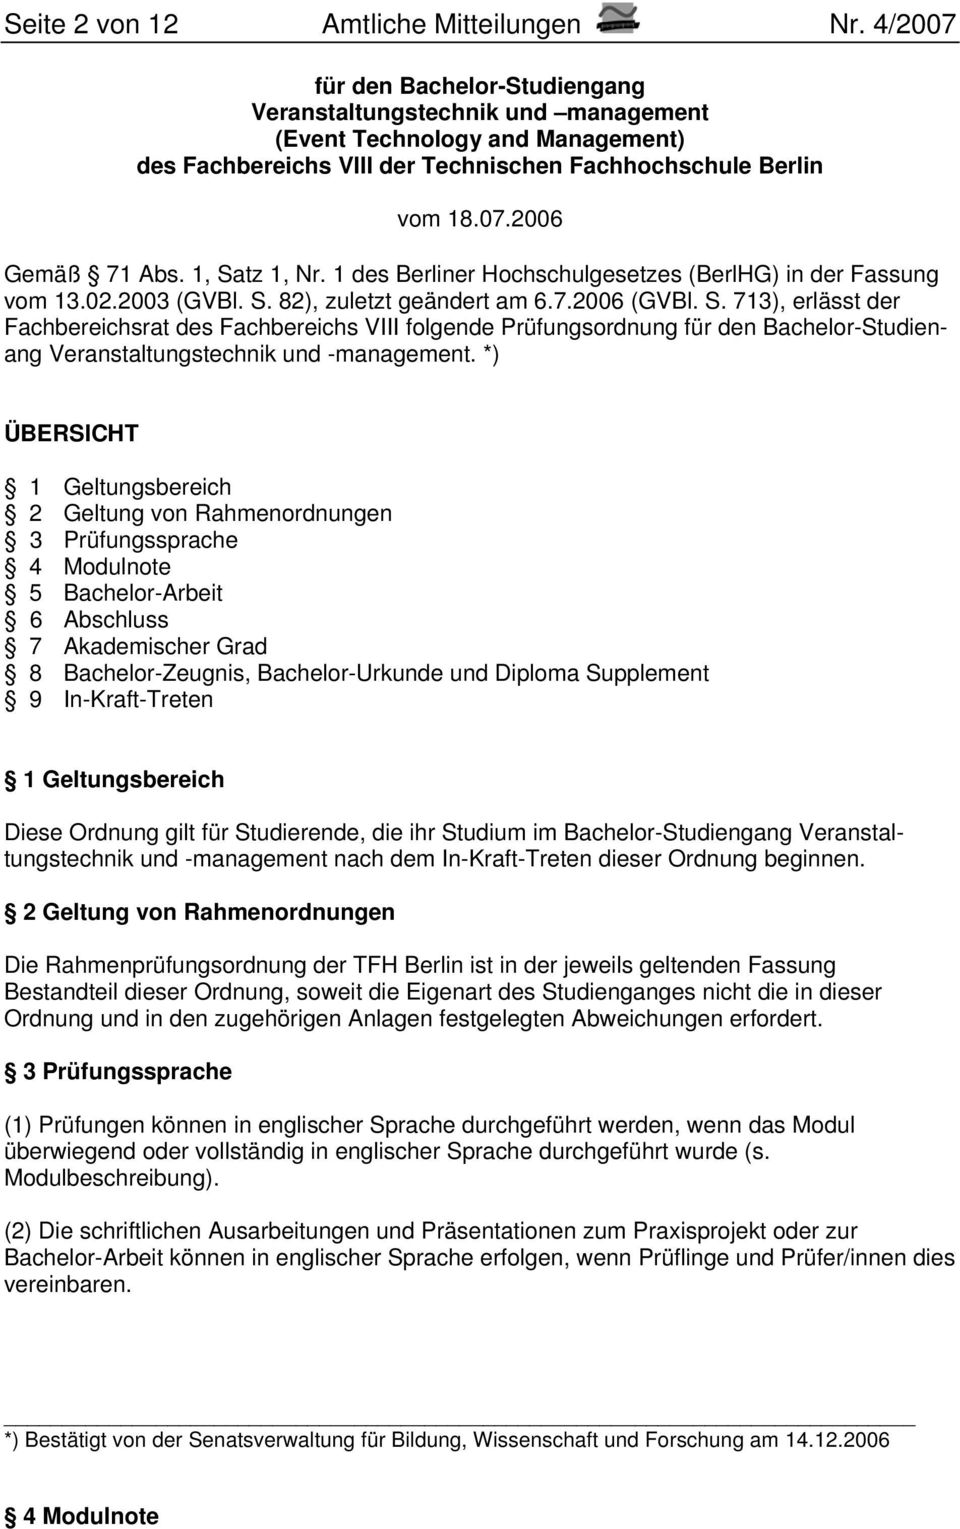 1, Satz 1, Nr. 1 des Berliner Hochschulgesetzes (BerlHG) in der Fassung vom 13.02.2003 (GVBl. S. 82), zuletzt geändert am 6.7.2006 (GVBl. S. 713), erlässt der Fachbereichsrat des Fachbereichs VIII folgende Prüfungsordnung für den Bachelor-Studienang Veranstaltungstechnik und -management.